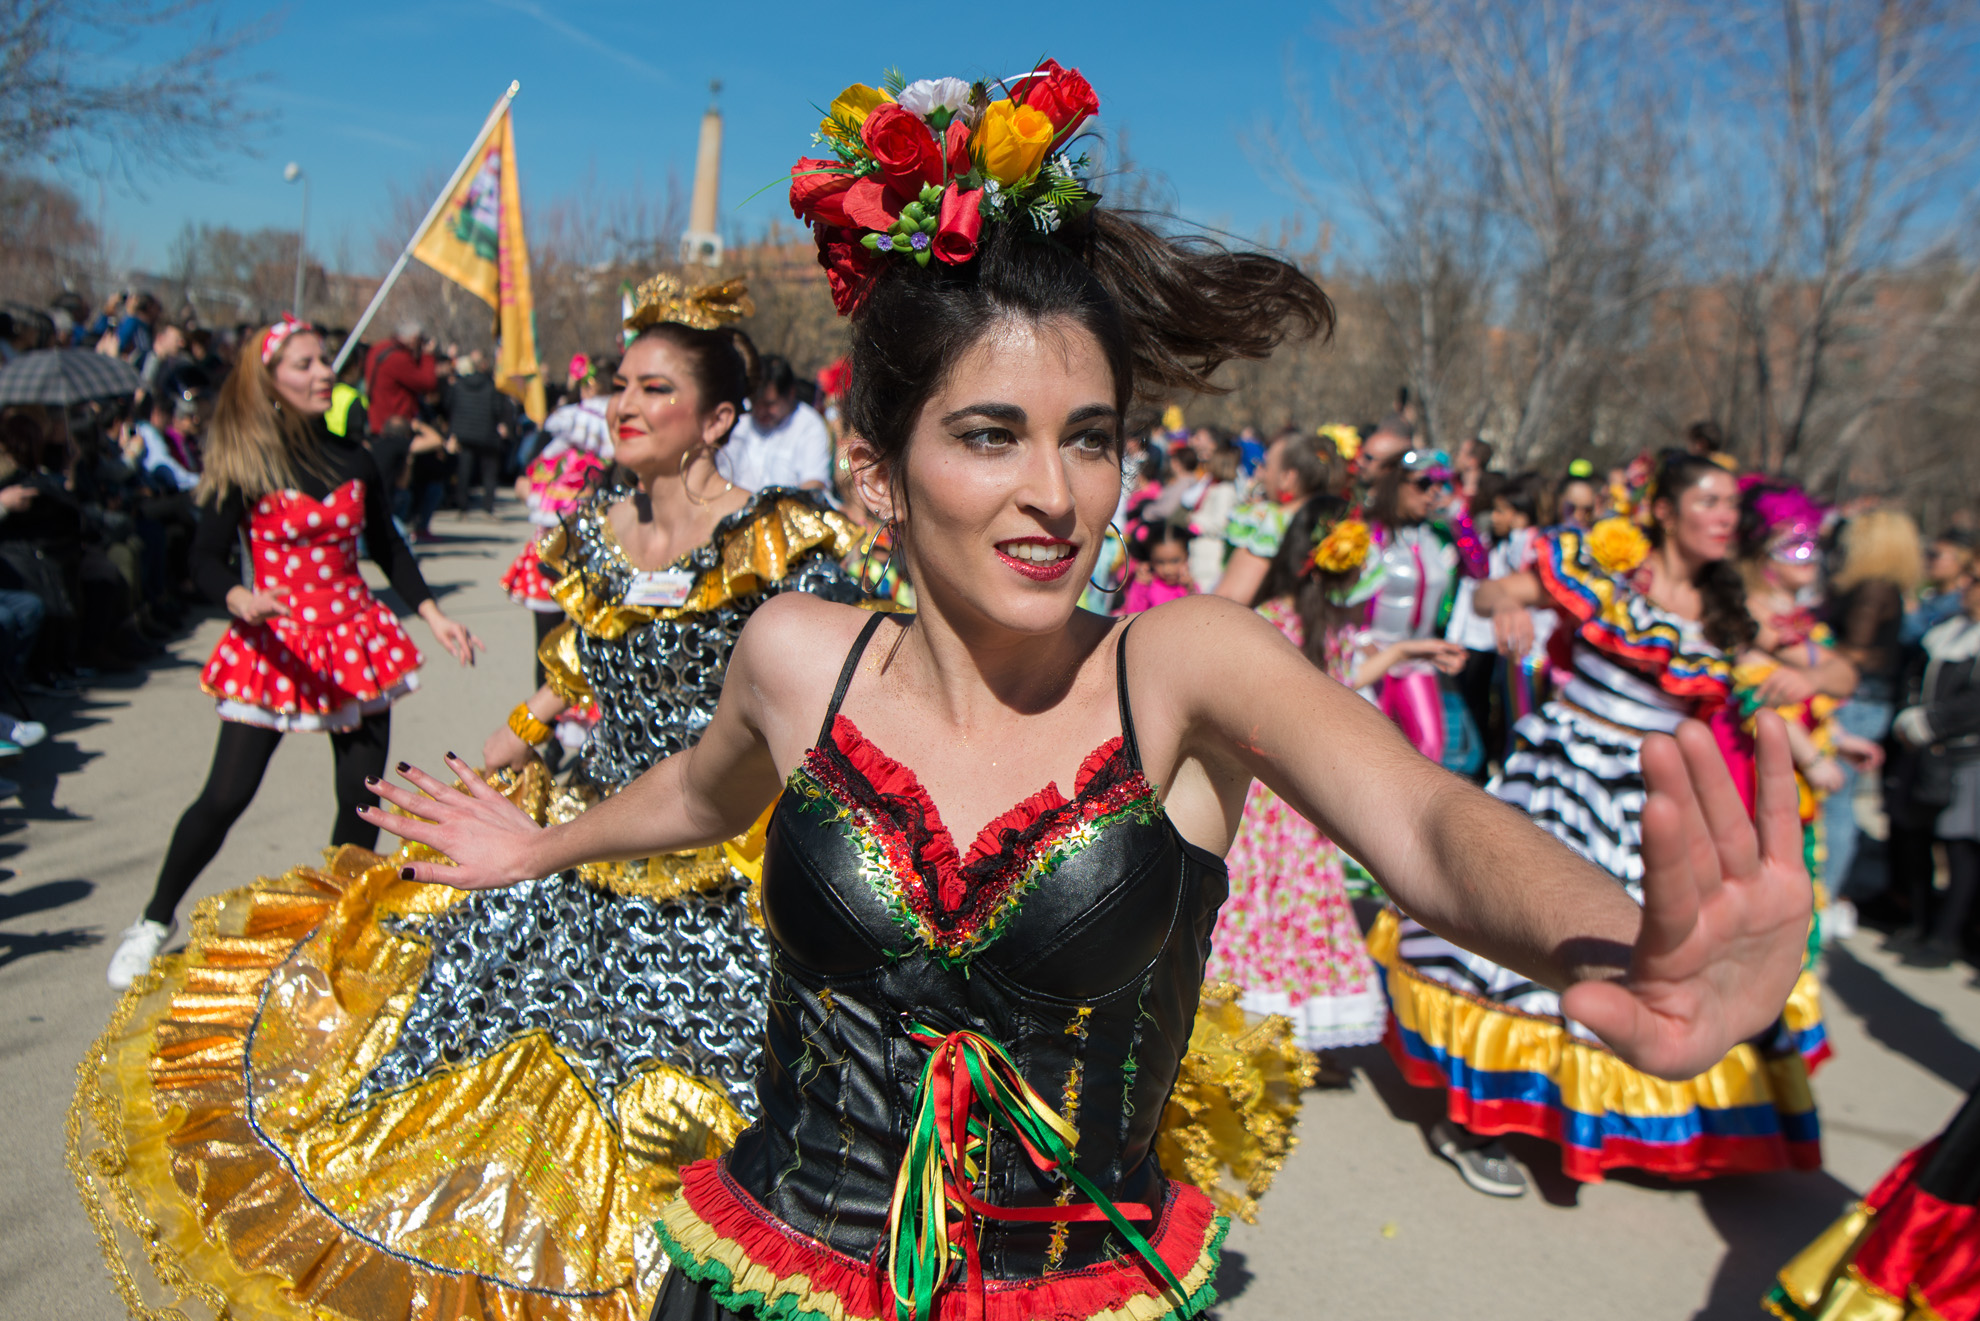 Bailarina colombiana durante el desfile carnavalesco en Madrid Río.